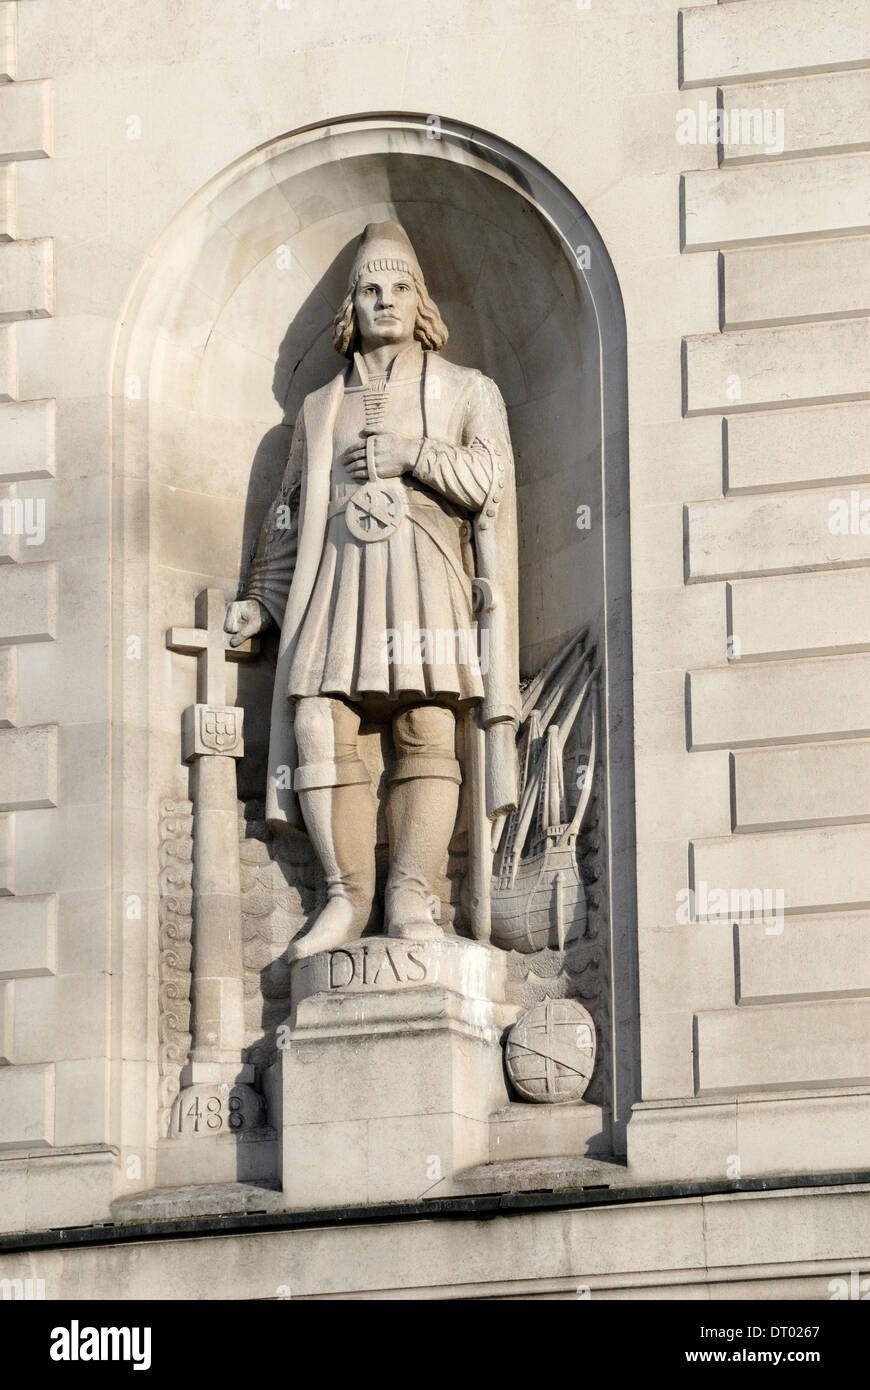 Londres, Angleterre, Royaume-Uni. Statue de Bartolomeu Dias (Bartholomew / explorateur portugais) sur la façade de la maison de l'Afrique du Sud, Trafalgar Sq Banque D'Images